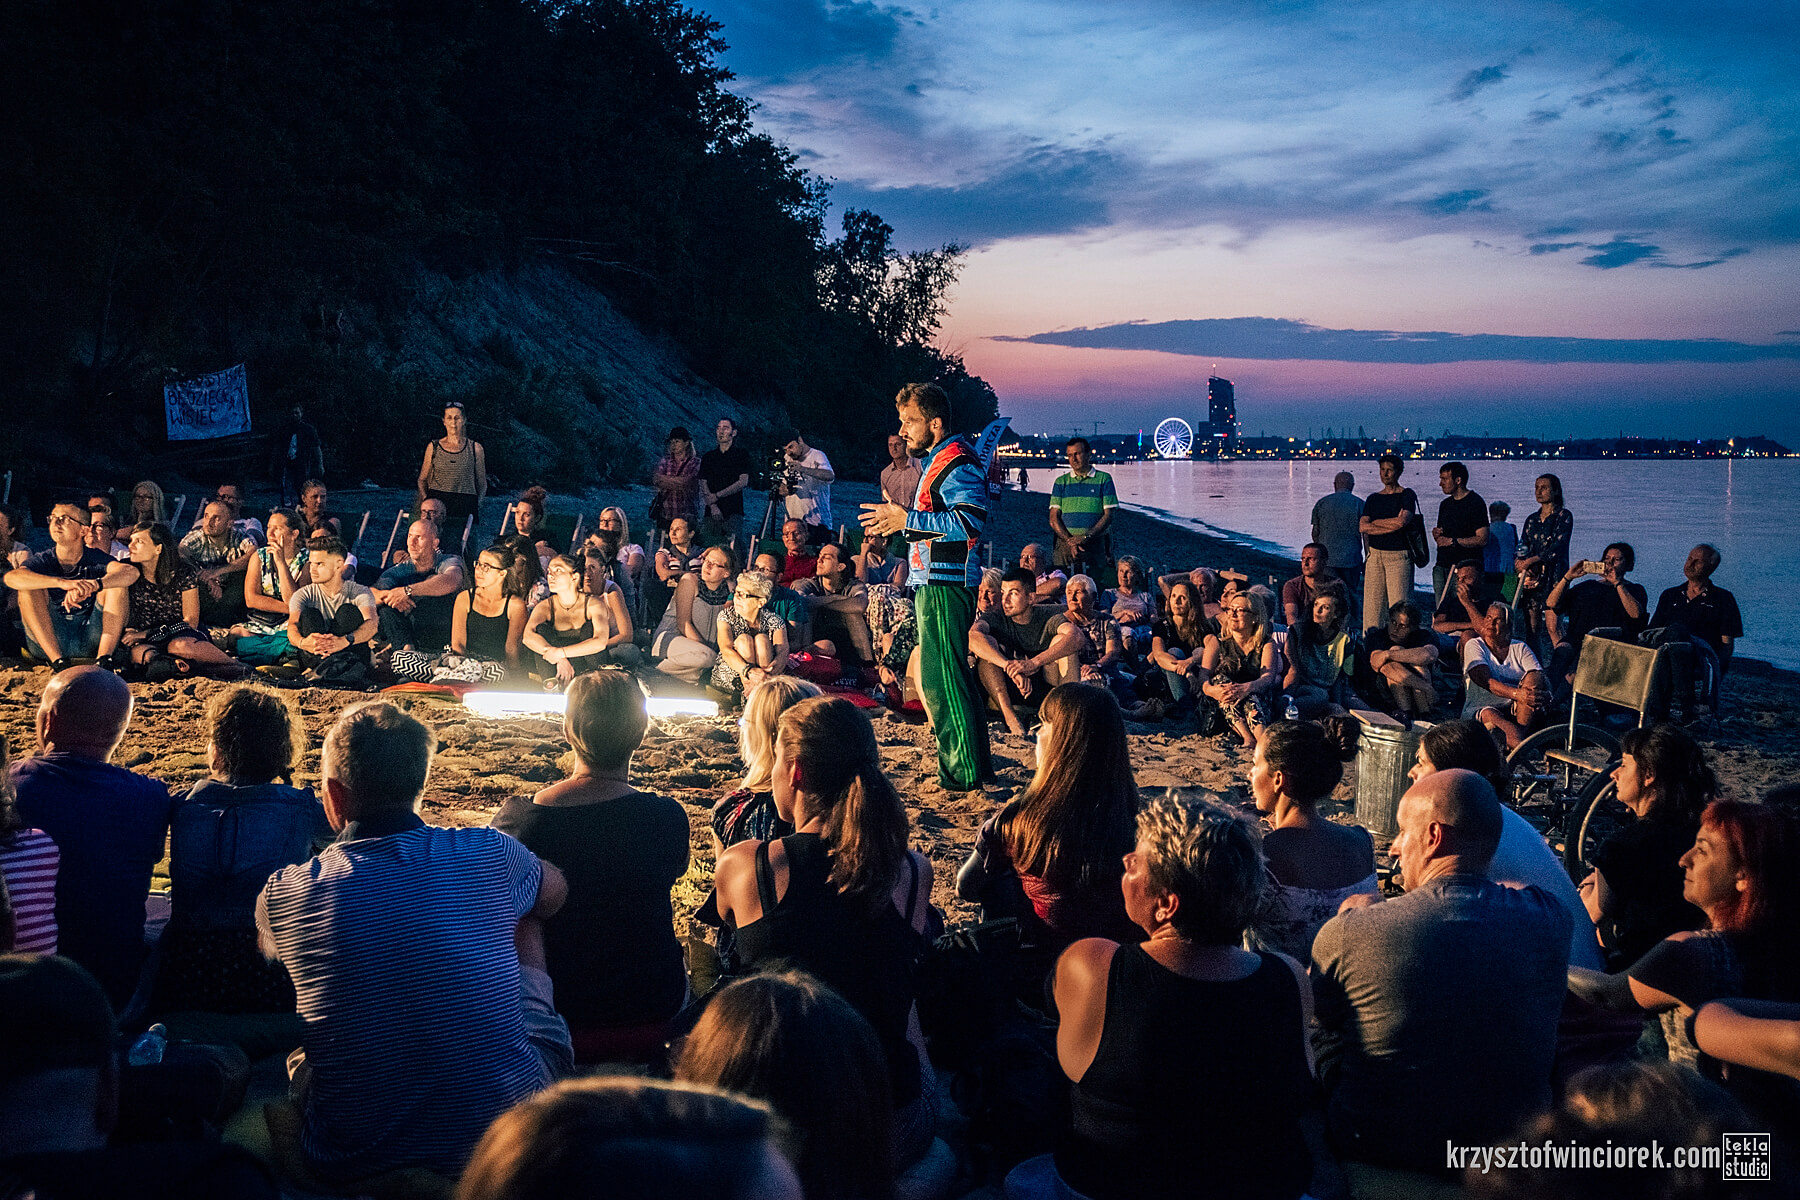 Na zdjęciu duża grupa ludzi siedząca na plaży w okręgu. W jego środku stoi aktor z zarostem ubrany w zielone spodnie i niebiesko-czarny sweter. W oddali widać światła centrum Gdyni.